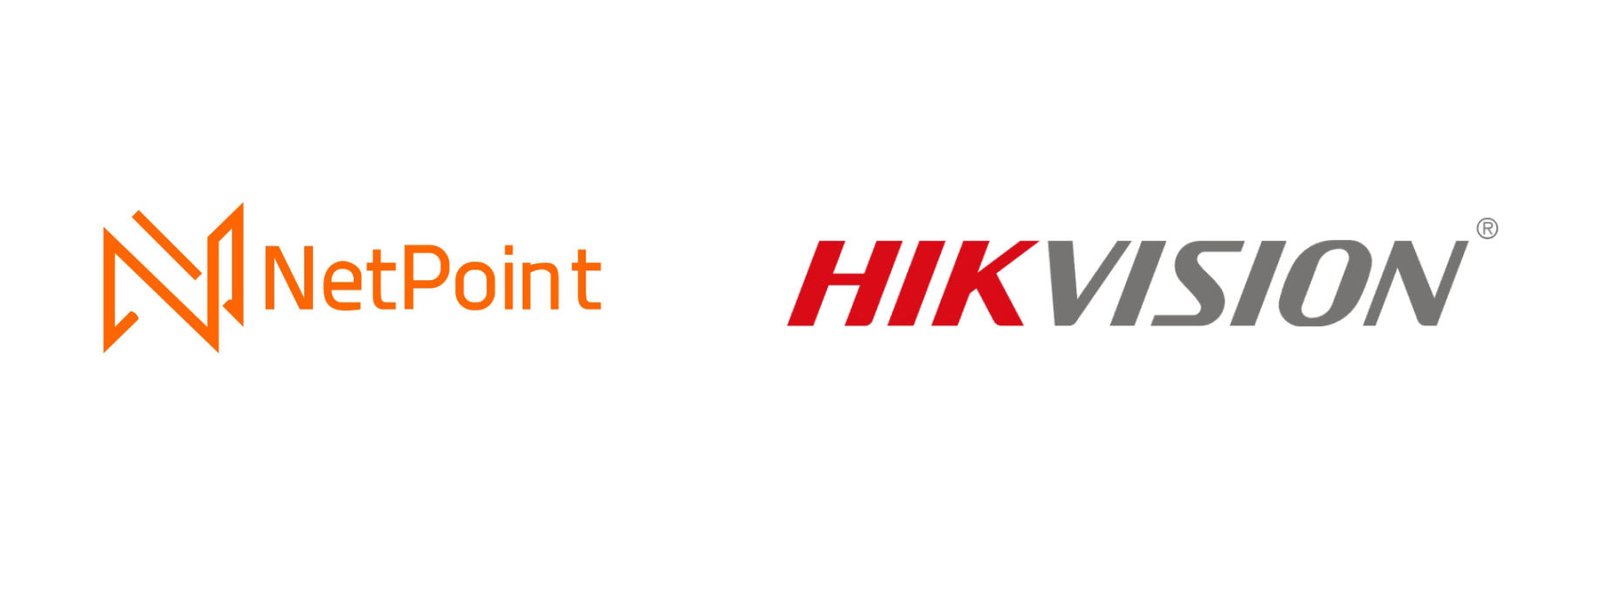 Hikvision - Netpoint